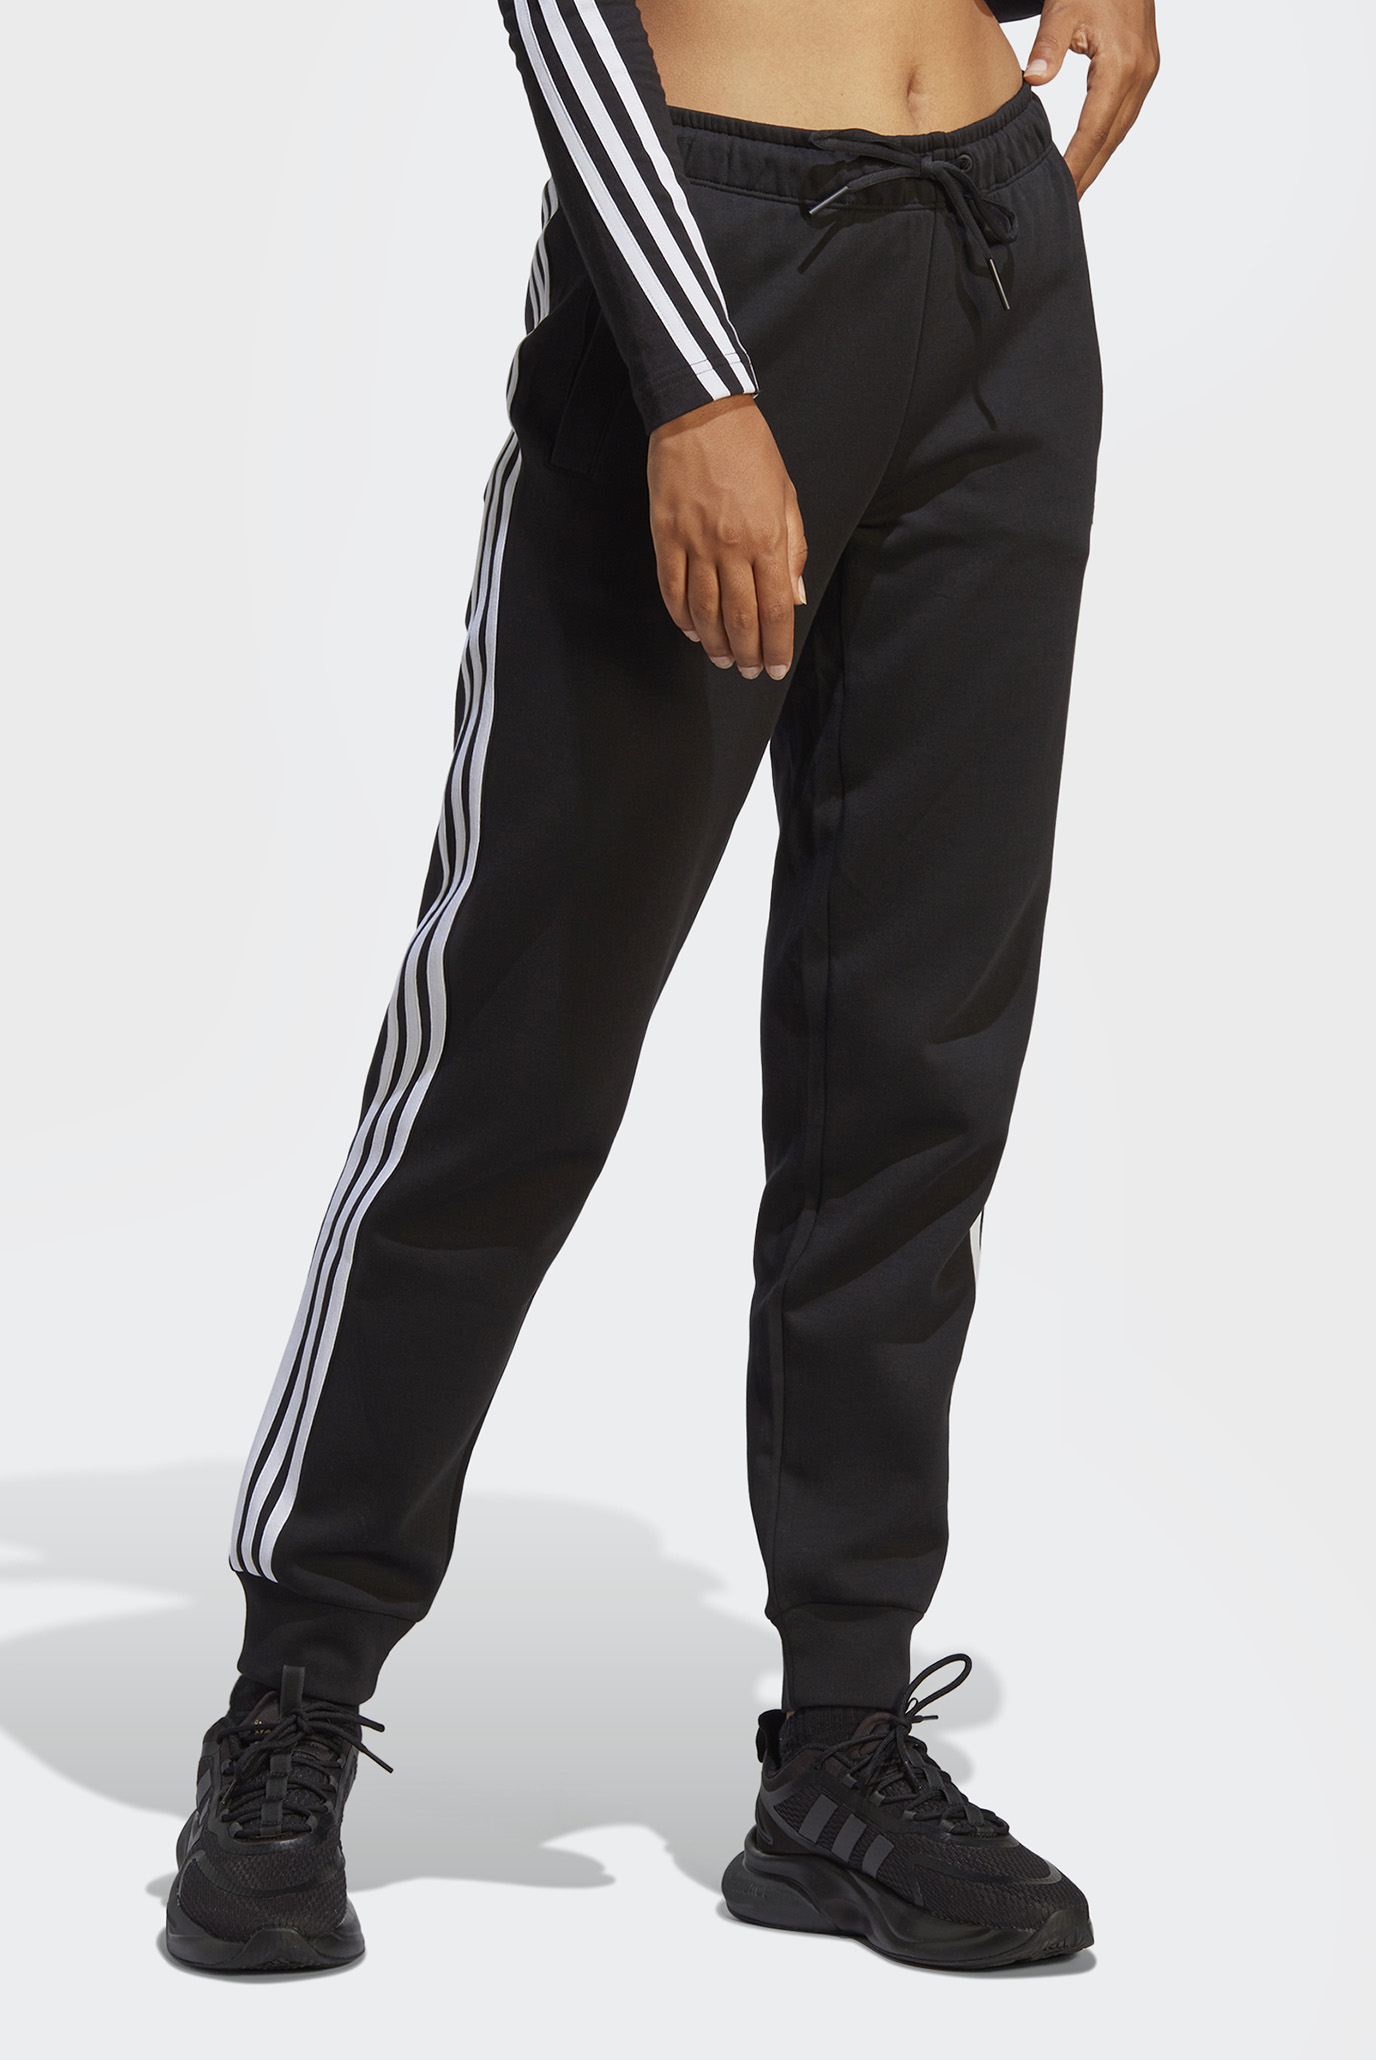 Жіночі чорні спортивні штаниFuture Icons 3-Stripes Regular 1